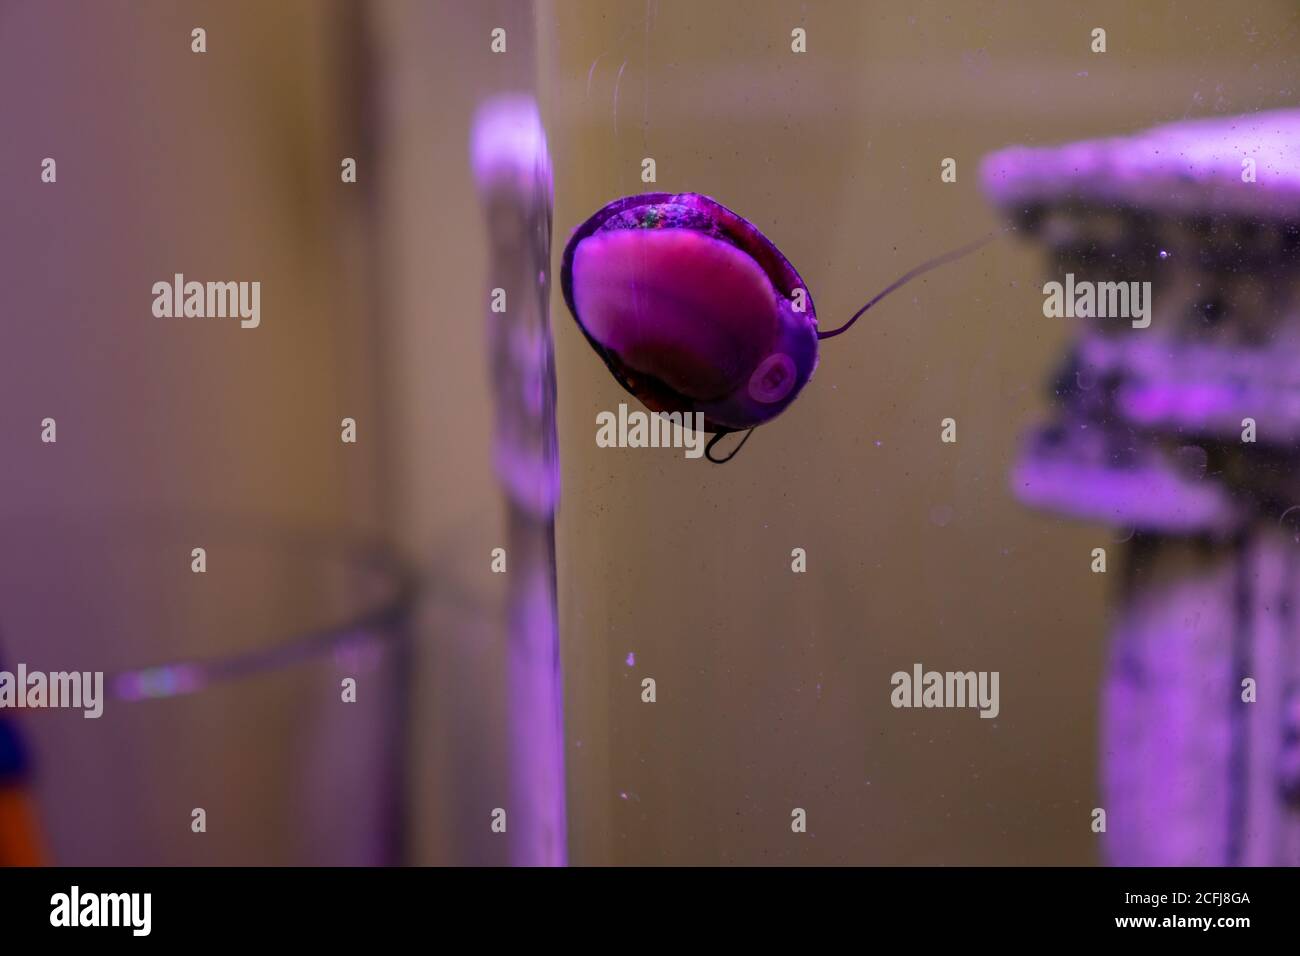 Dans un aquarium, l'escargot attaché au verre montre son dessous. Banque D'Images